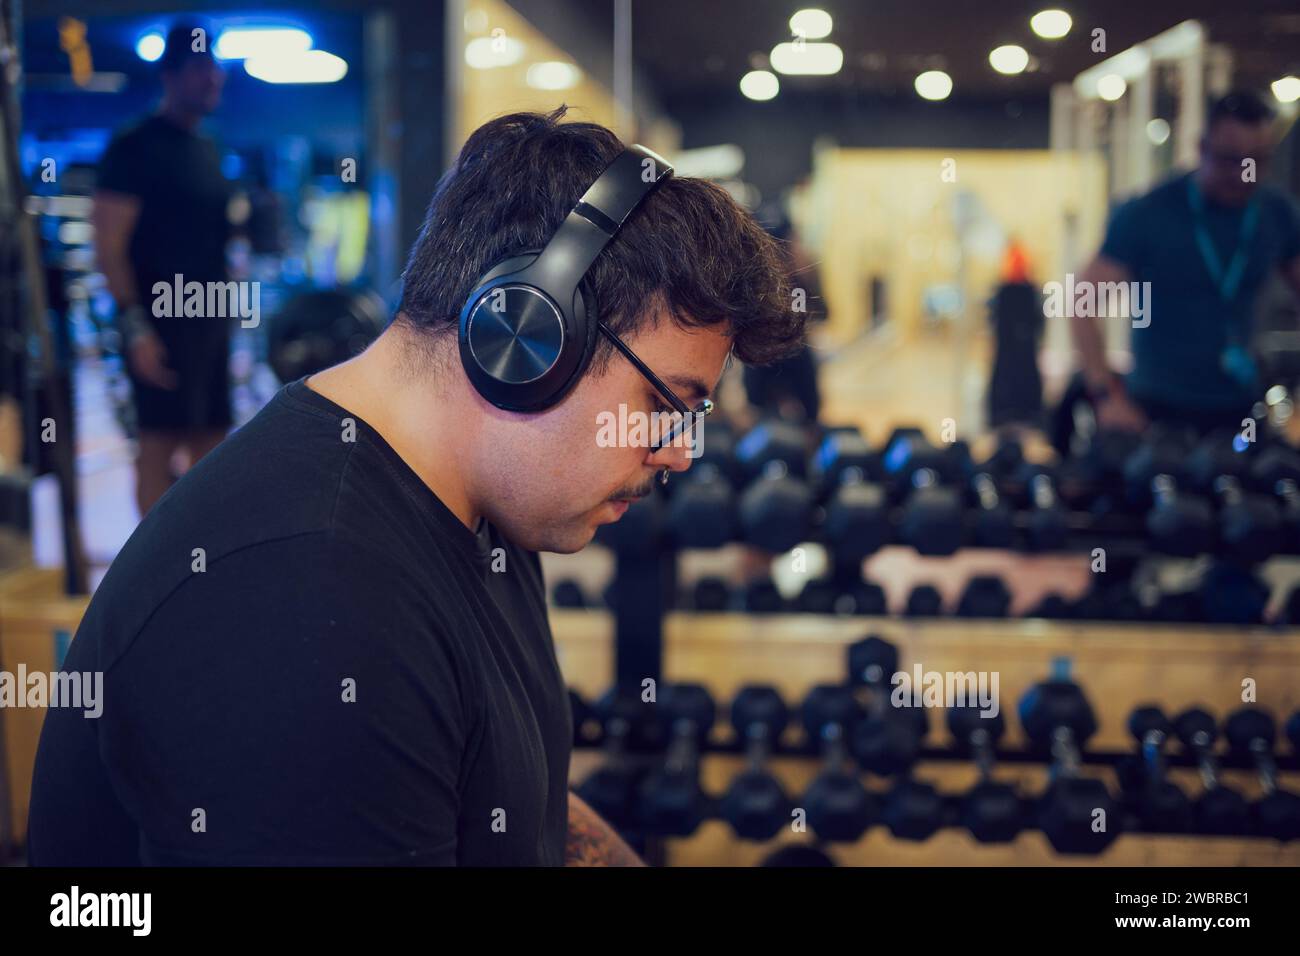 Portrait d'un homme s'entraînant et écoutant de la musique dans une salle de gym Banque D'Images